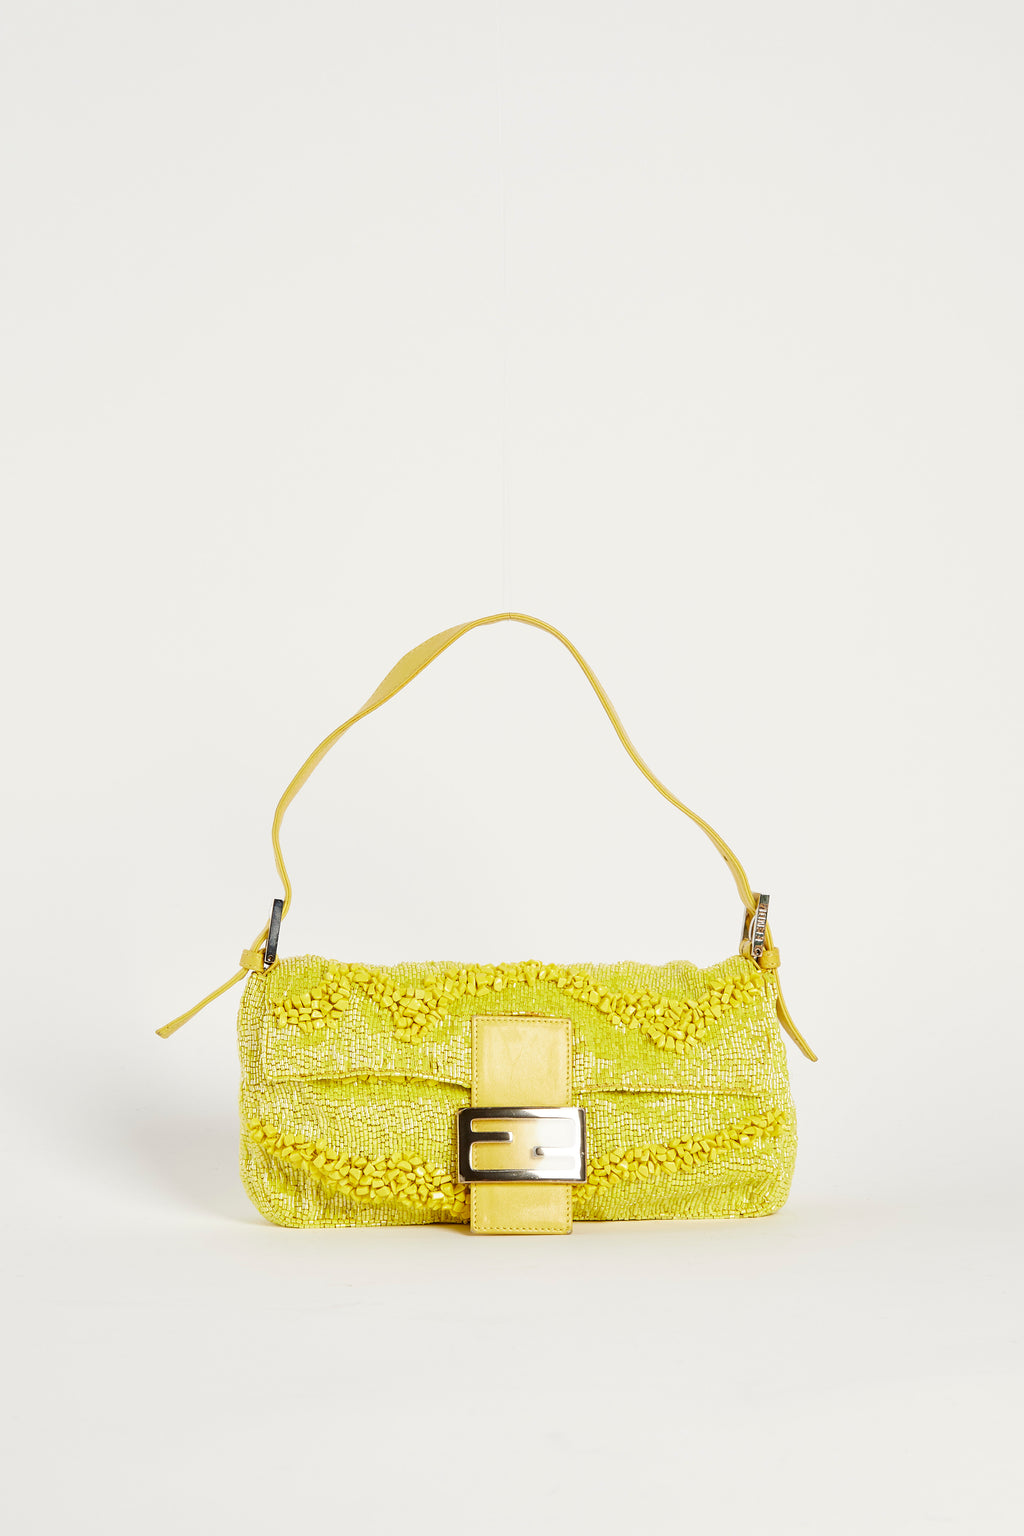 RARE Fendi Yellow Beaded Baguette Shoulder Bag